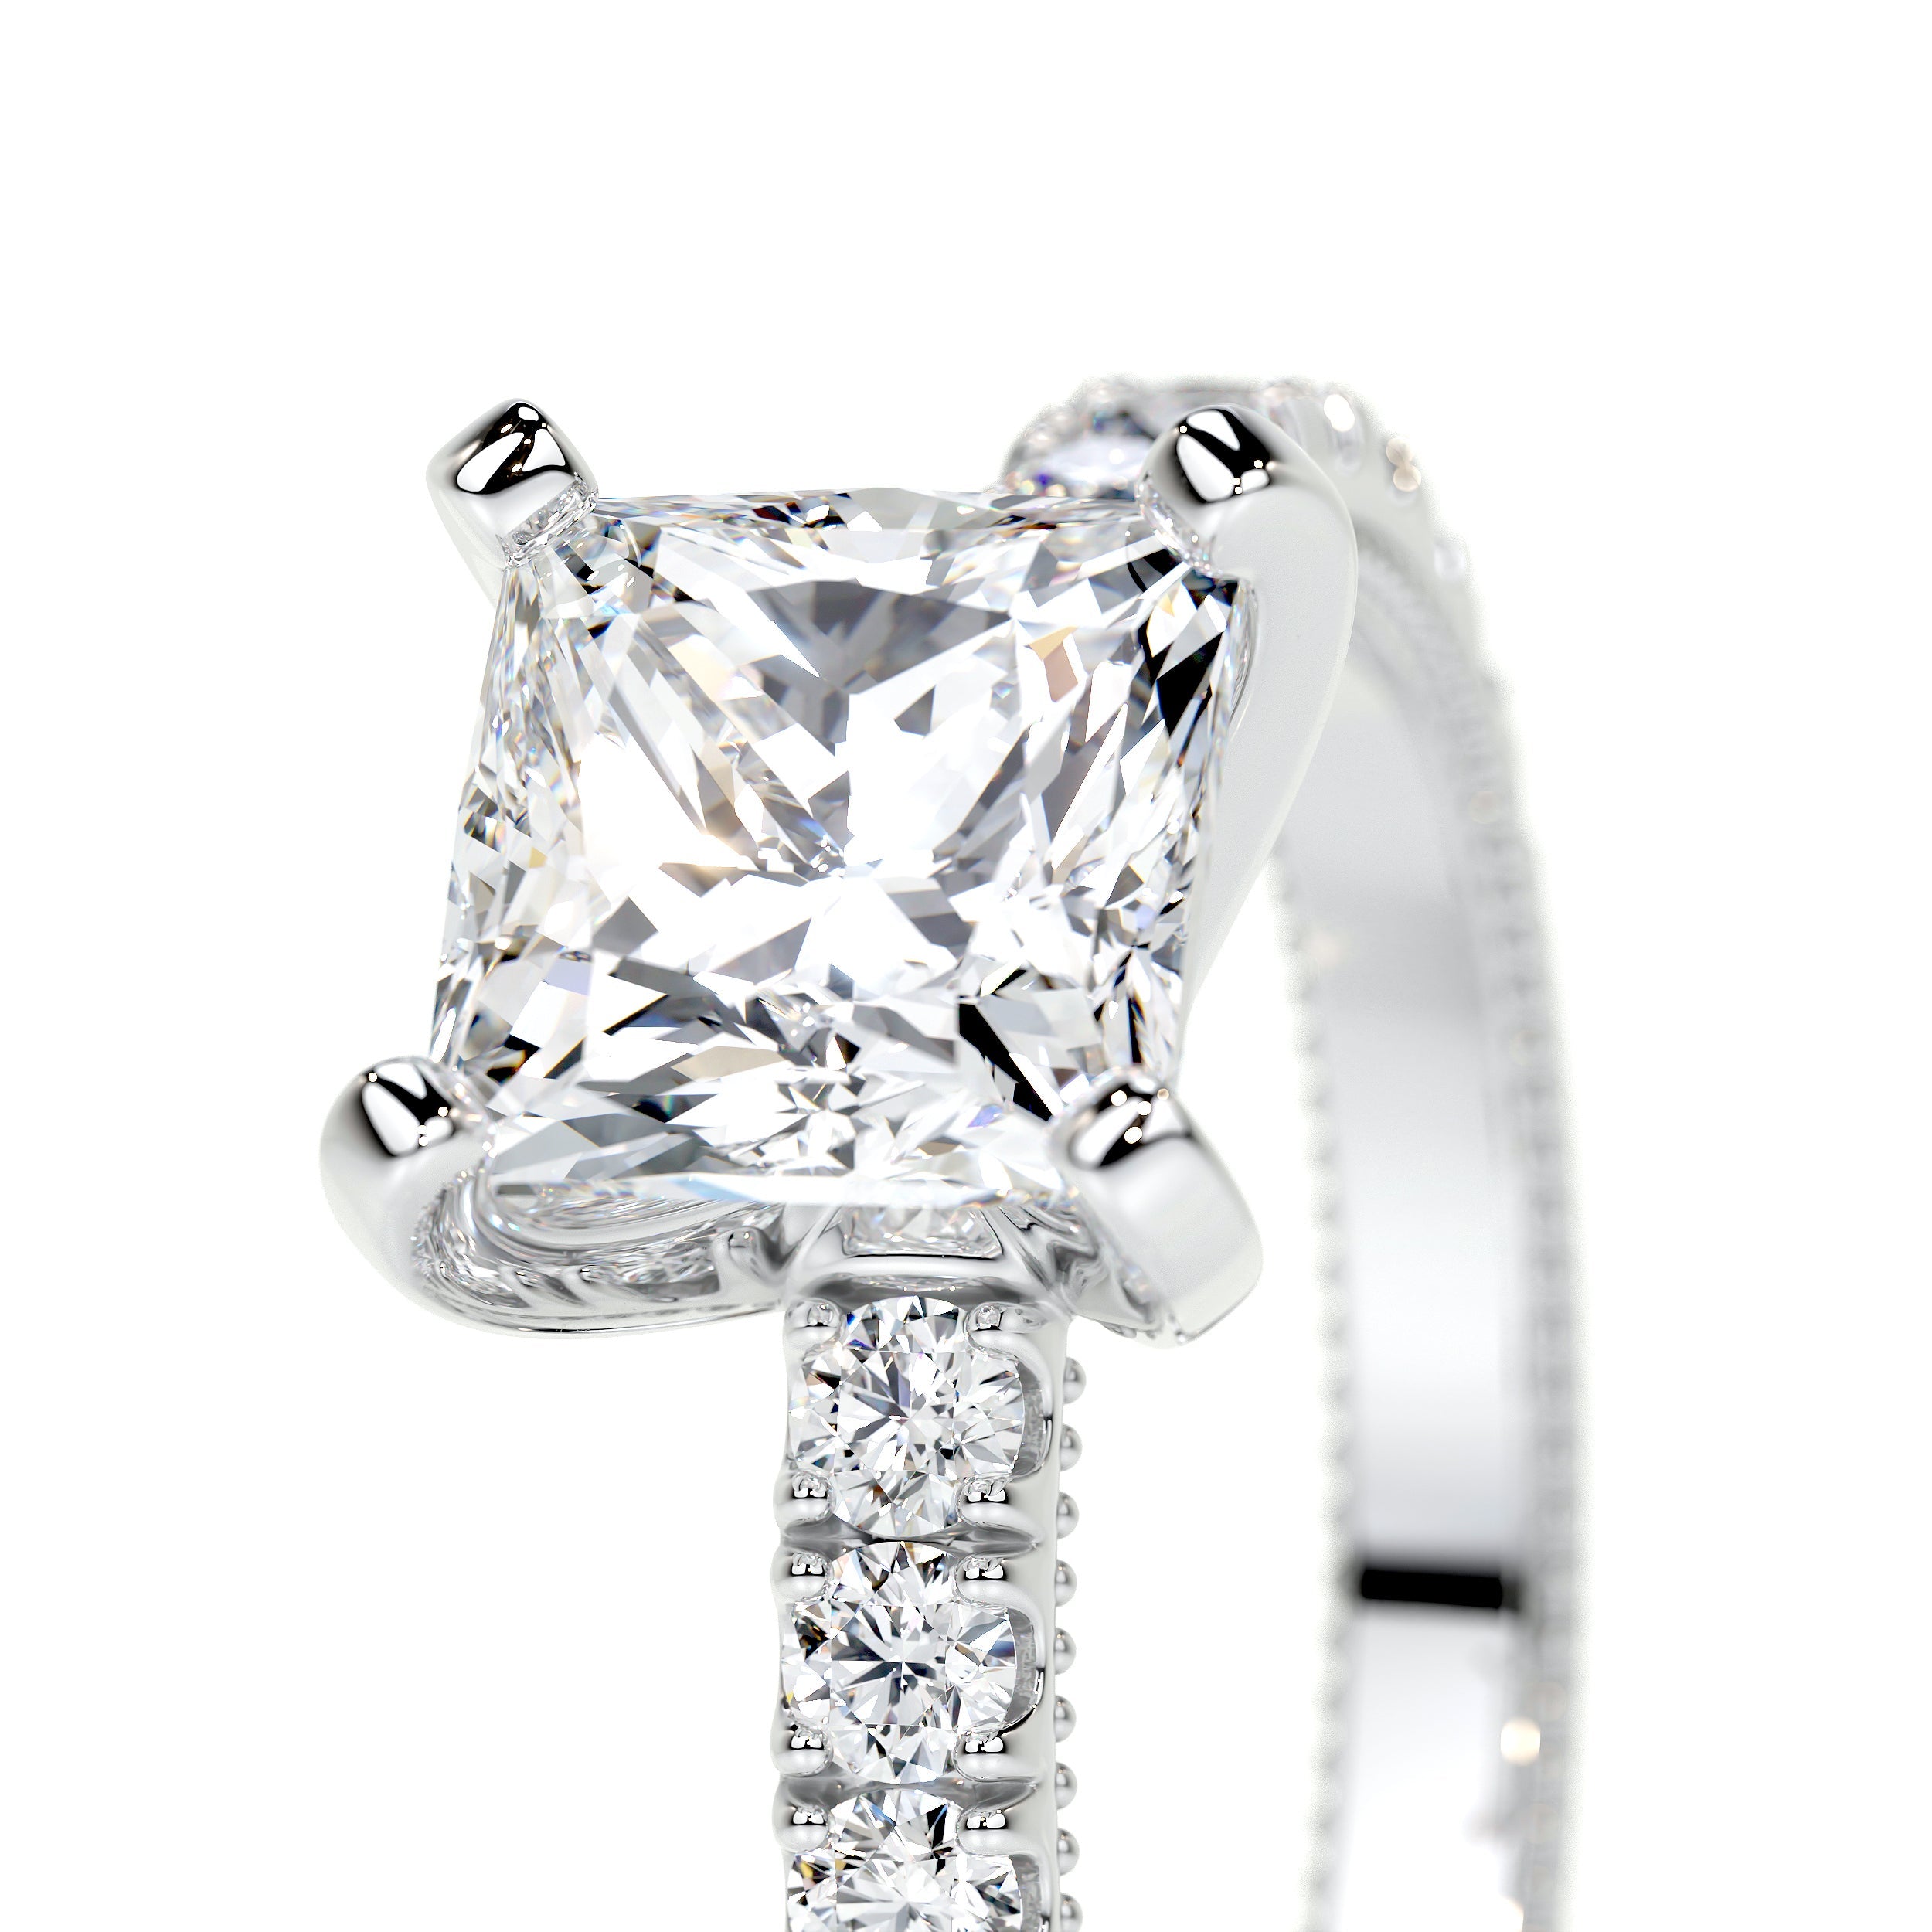 Blair Lab Grown Diamond Ring   (2 Carat) -14K White Gold